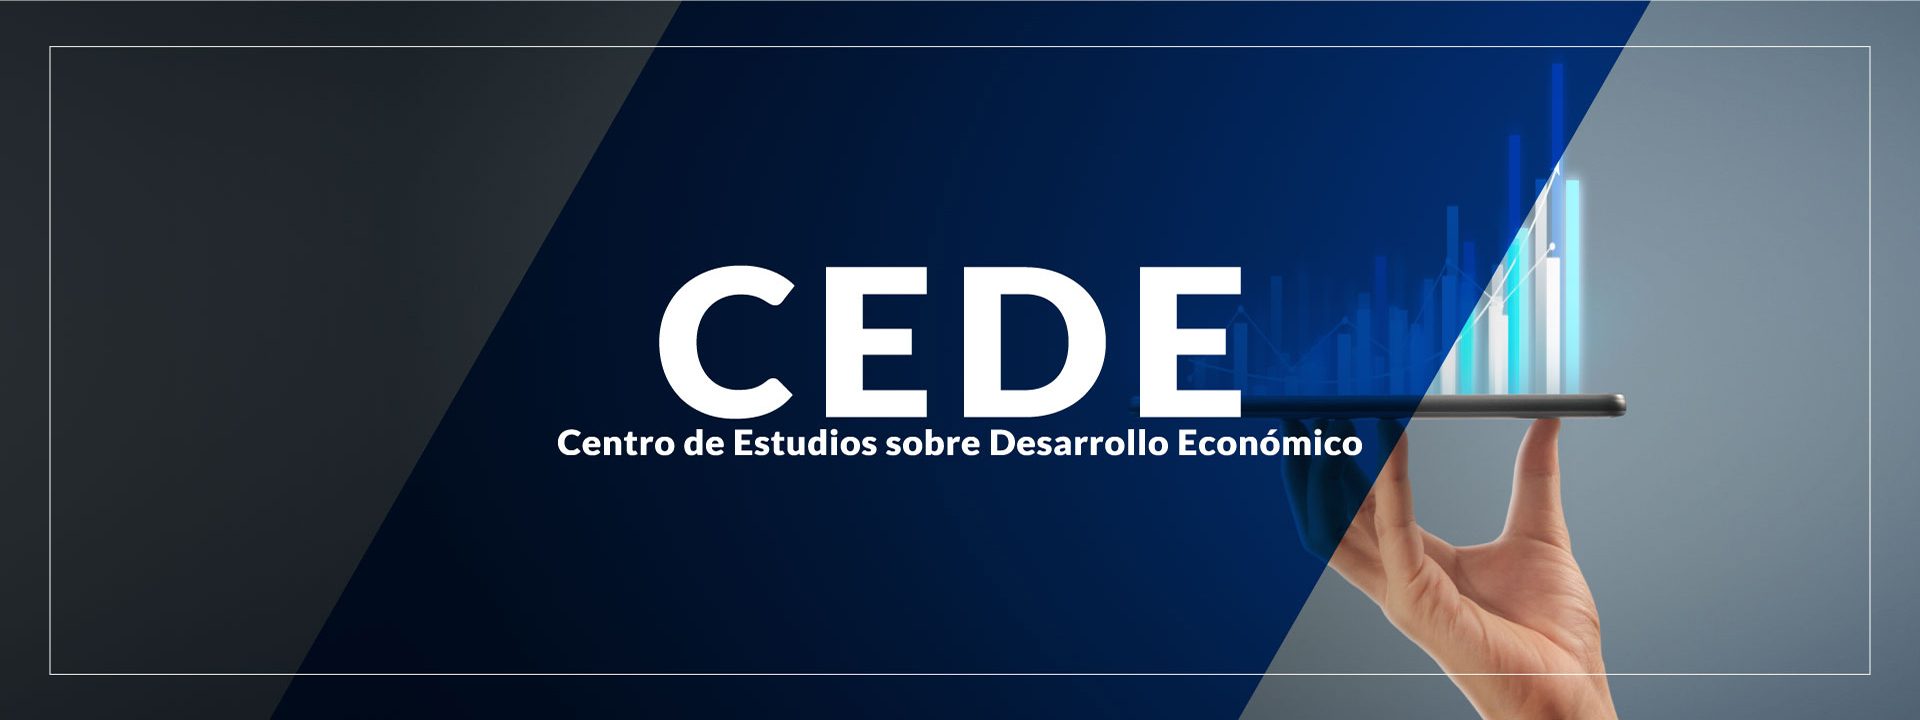 CEDE-centro-de-estudios-sobre-desarrollo-economico.jpg